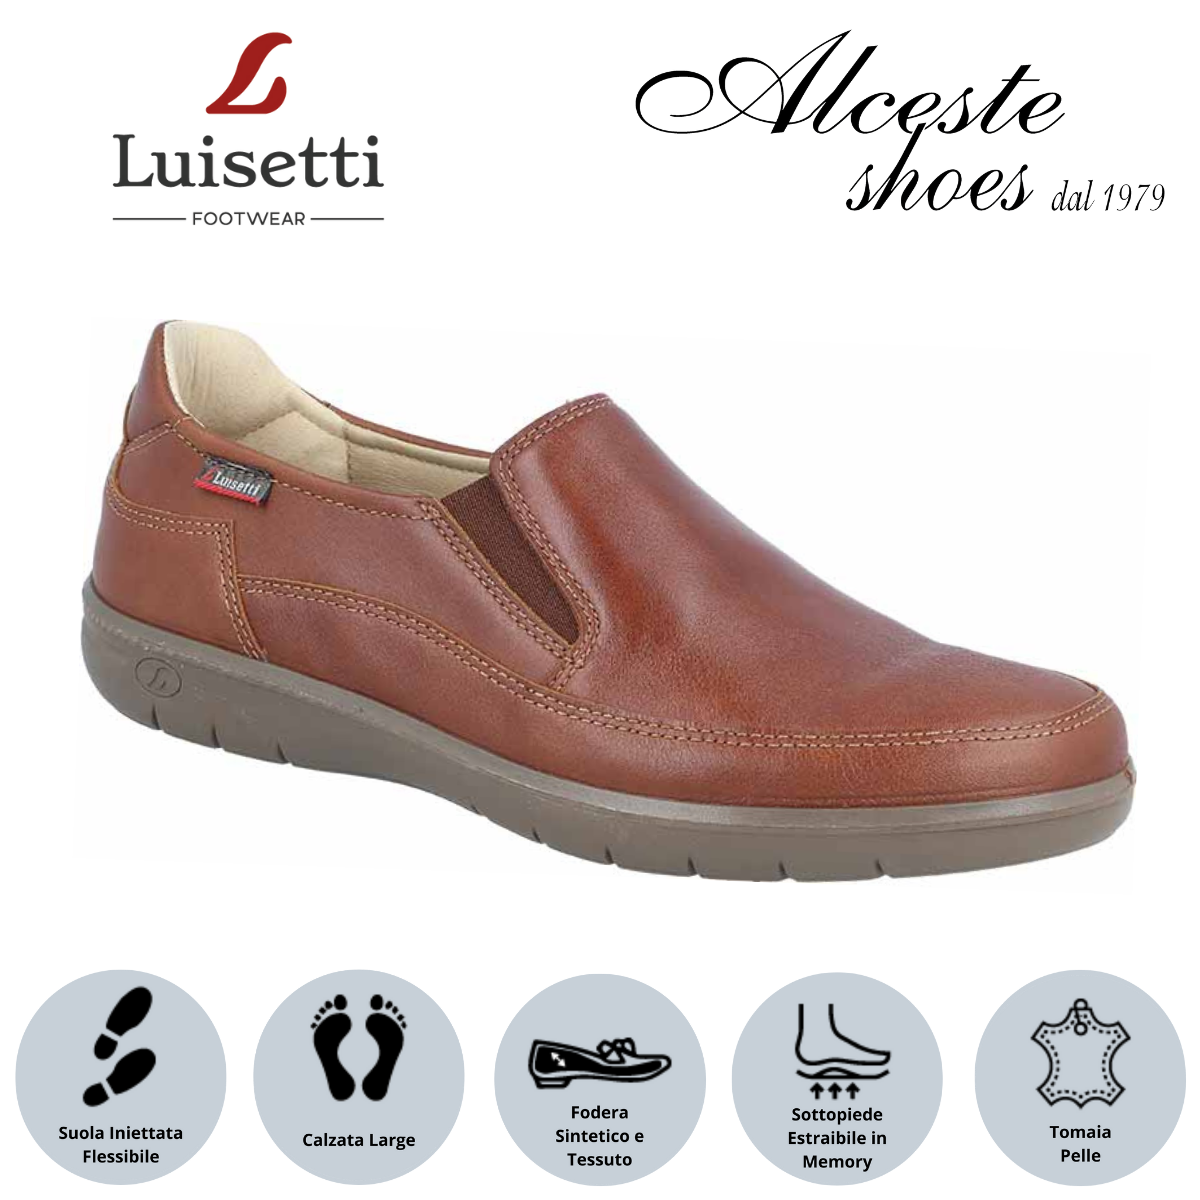 Mocassino Uomo "Luisetti" Art. 32302 in Pelle Cognac Alceste Shoes 7 1